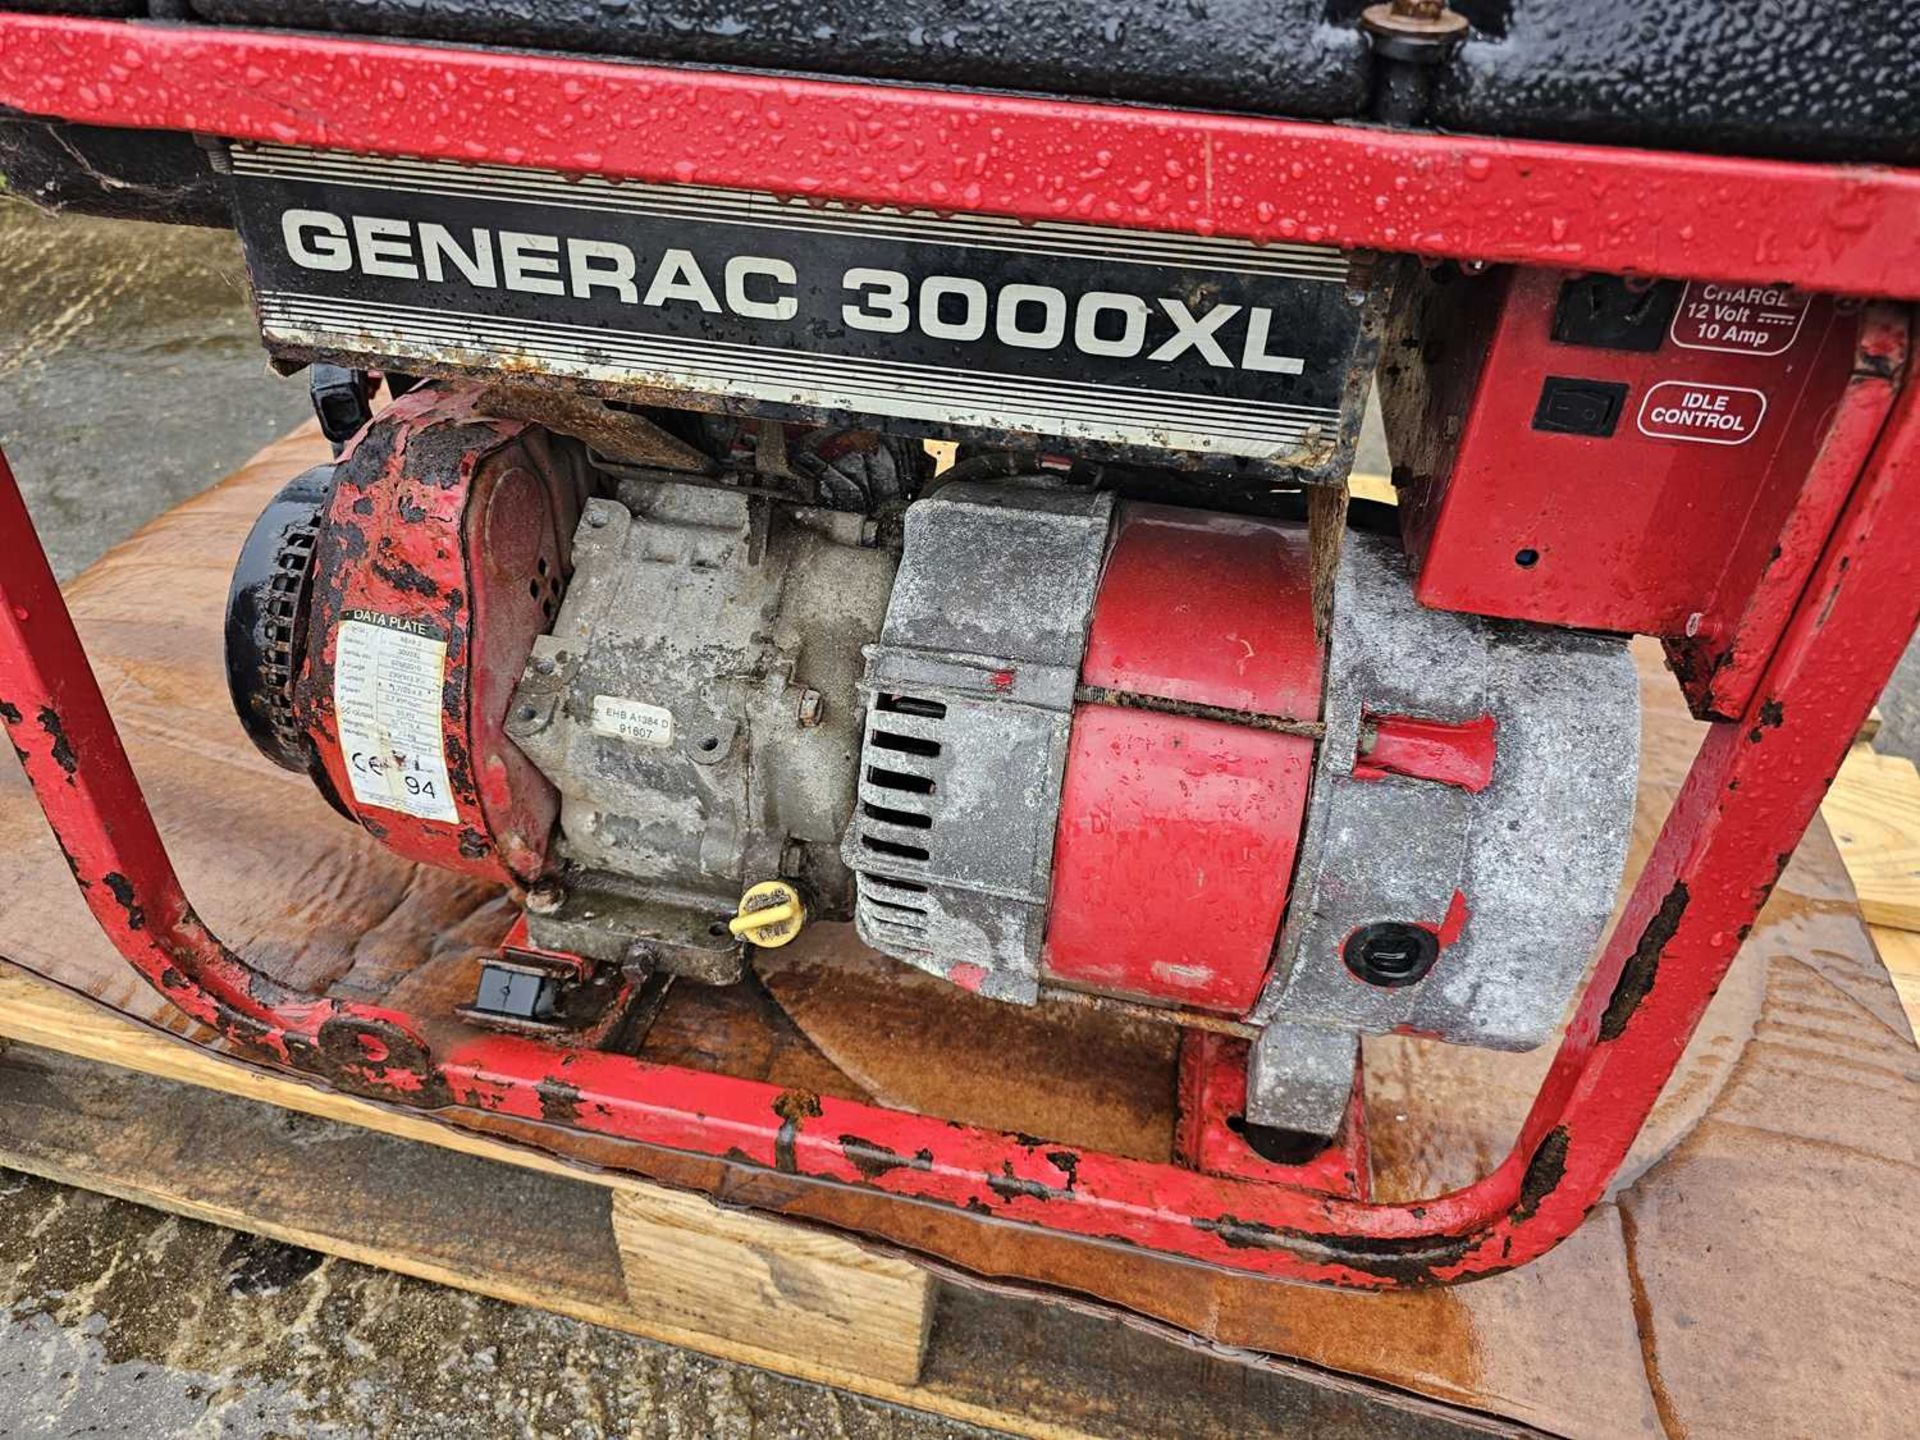 Generac 3000XL Petrol Generator, Honda Engine - Image 7 of 9